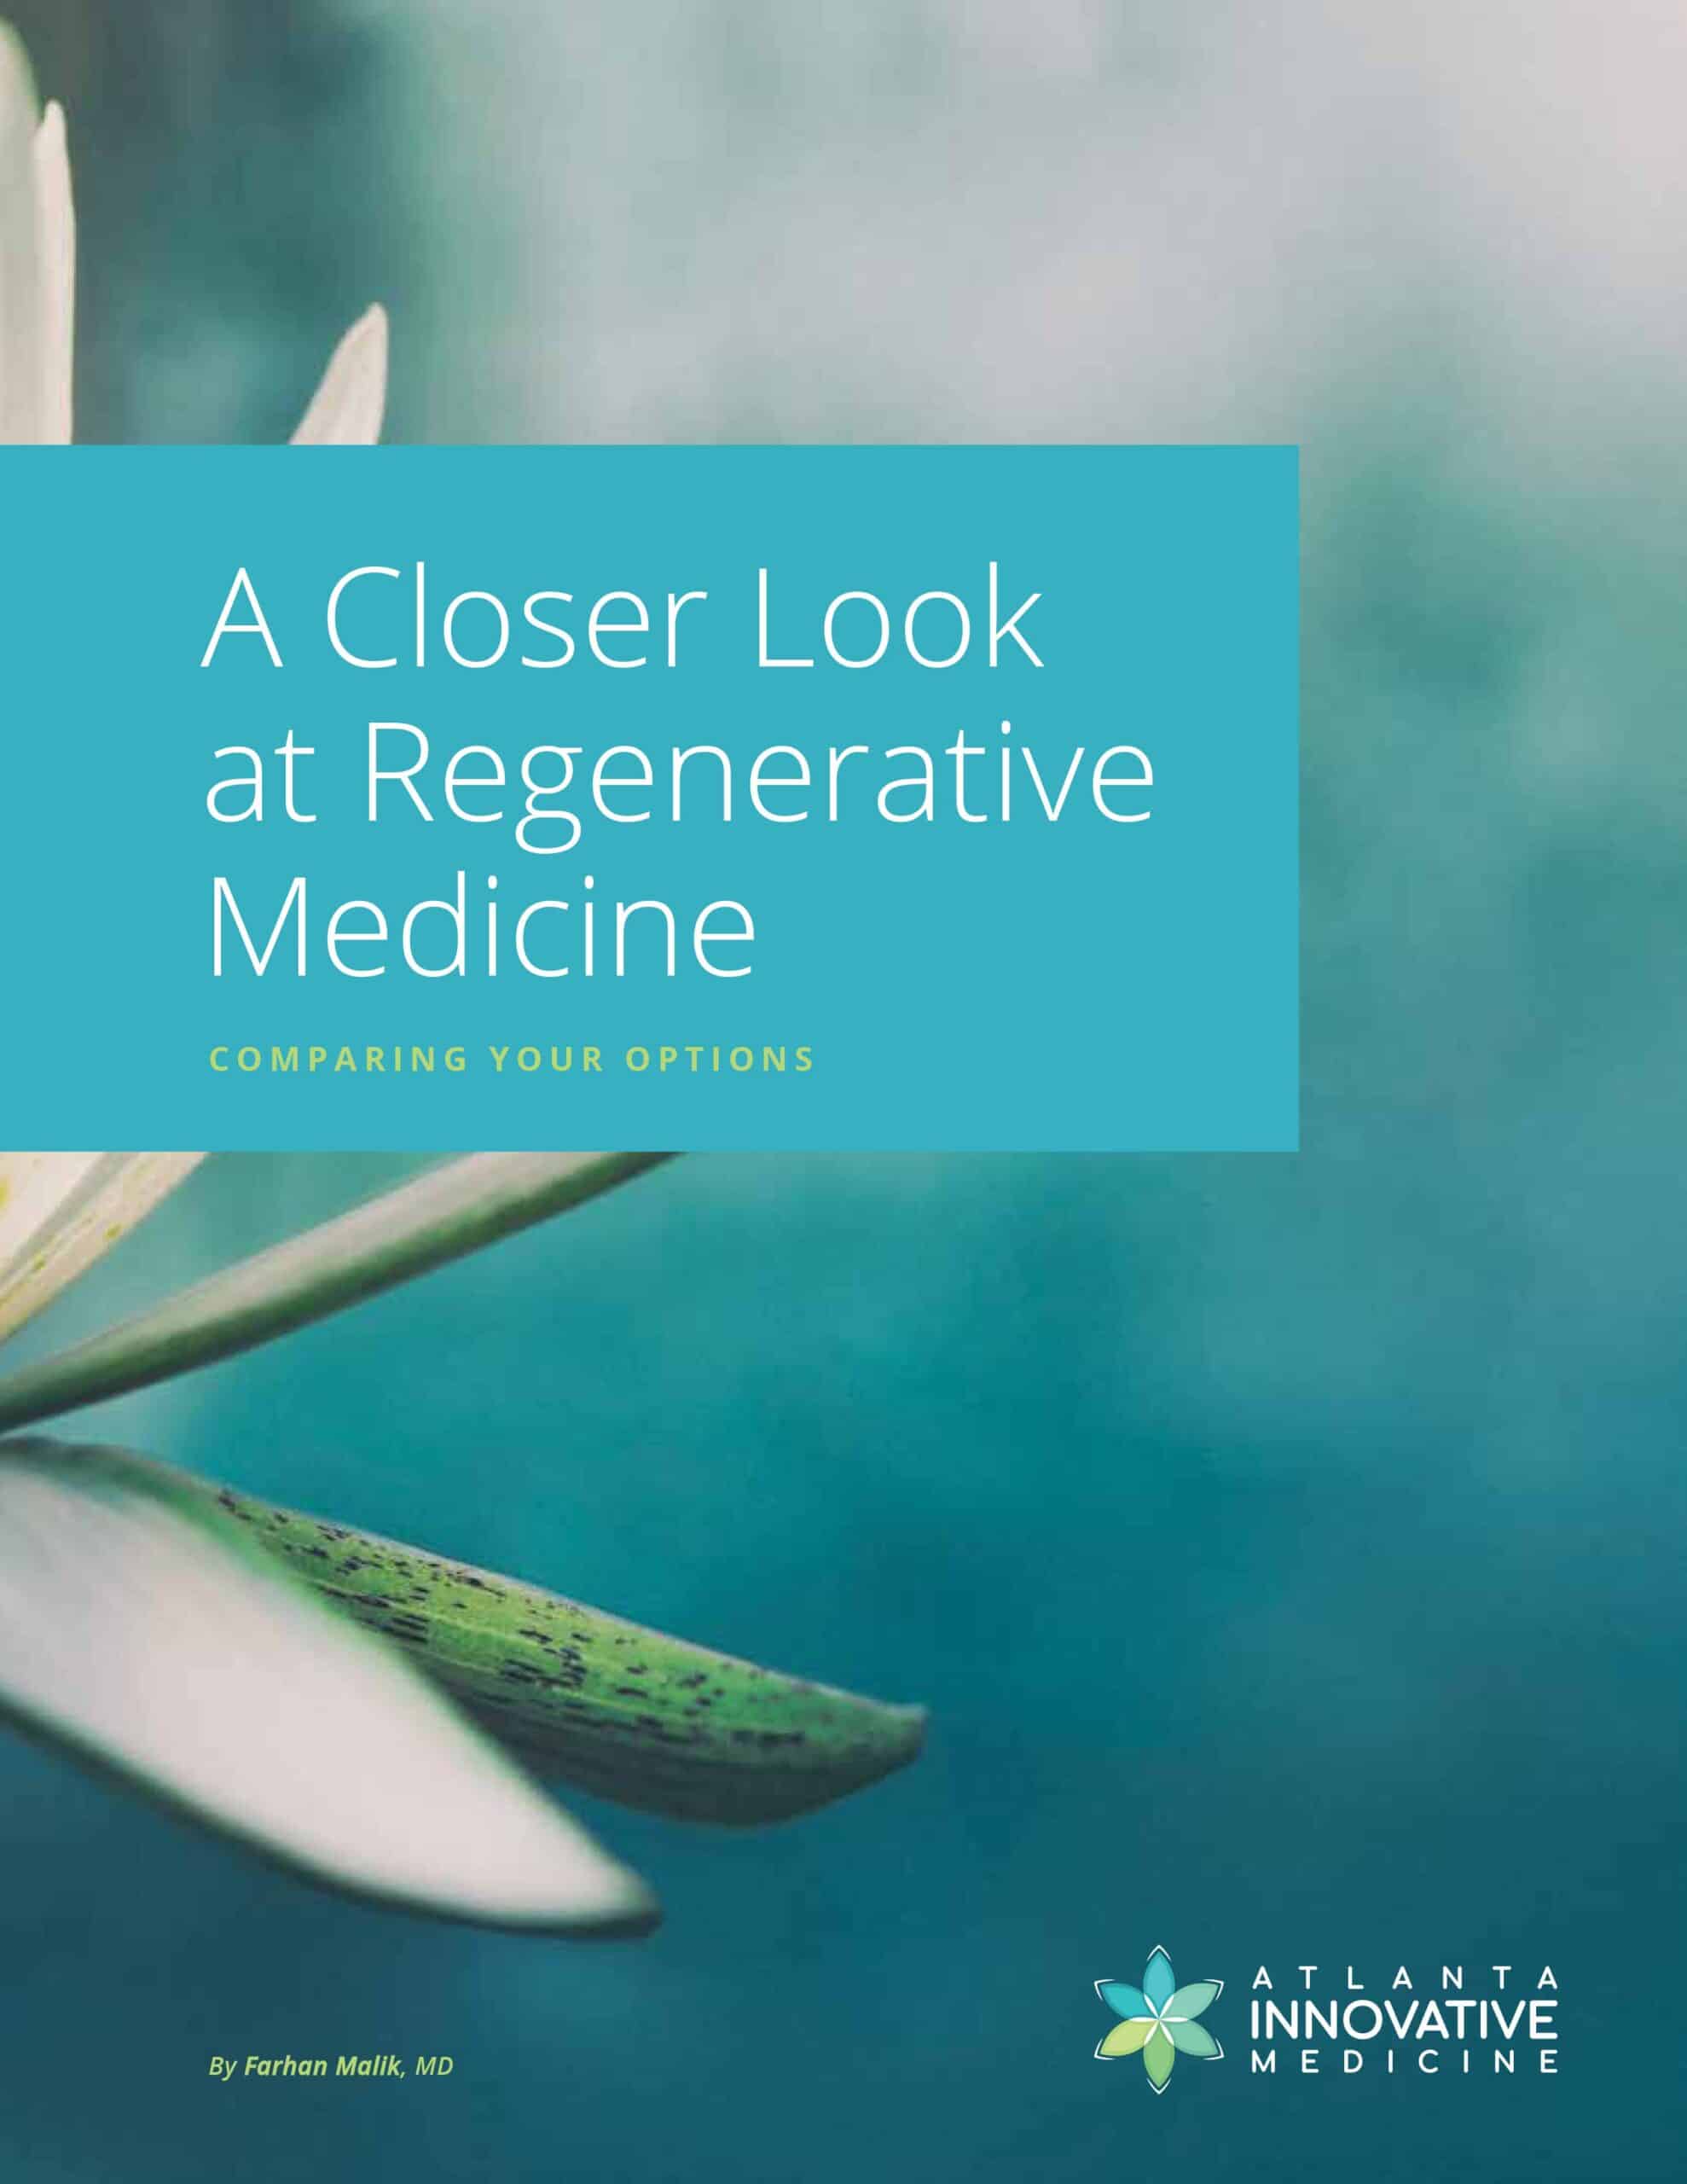 Image of "A Closer Look at Regenerative Medicine" book cover.